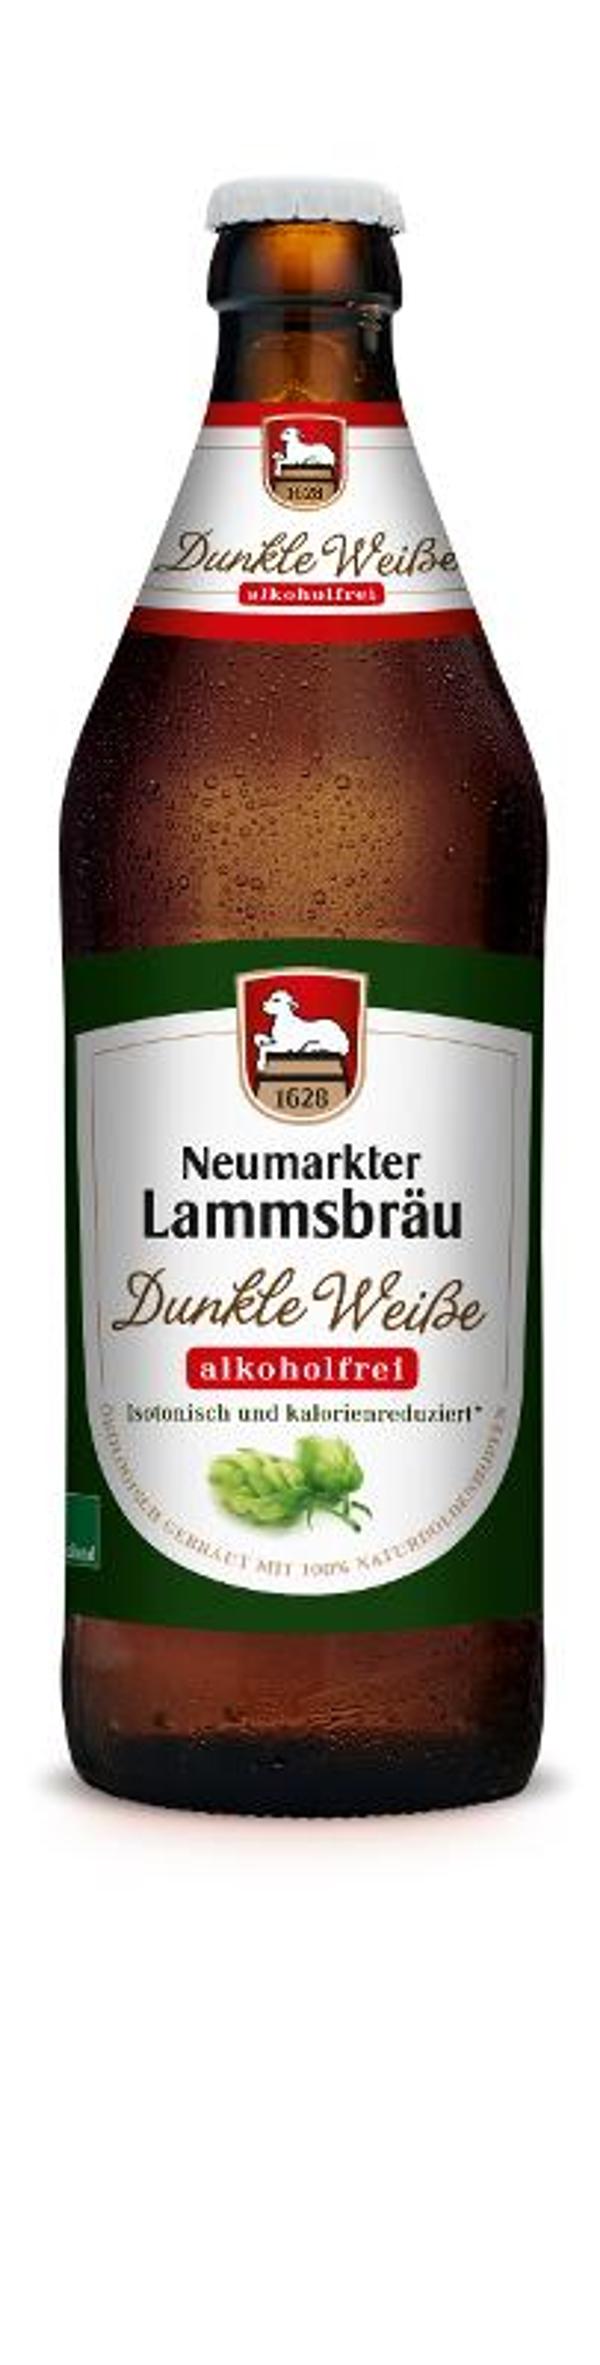 Produktfoto zu Lammsbräu Dunkle Weiße alkfrei